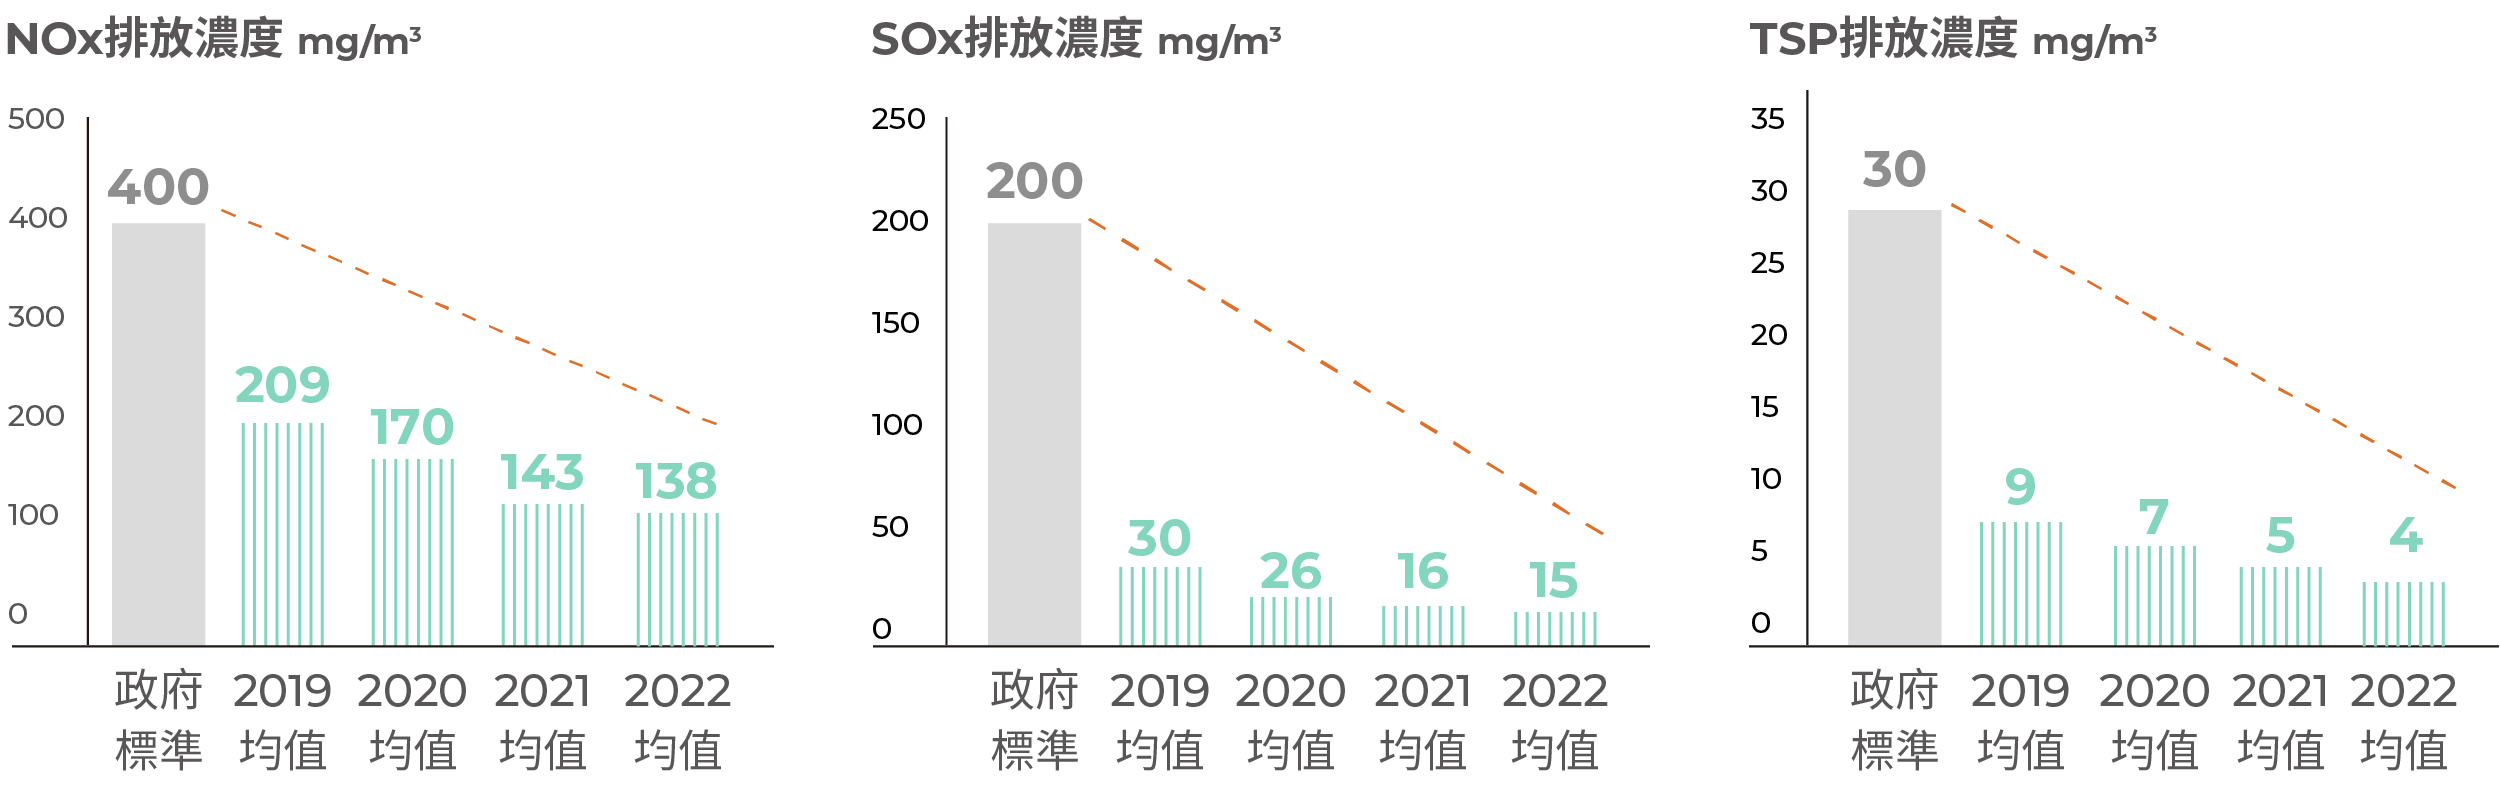 NOx、SOx、TSP 排放濃度 - 中國大陸